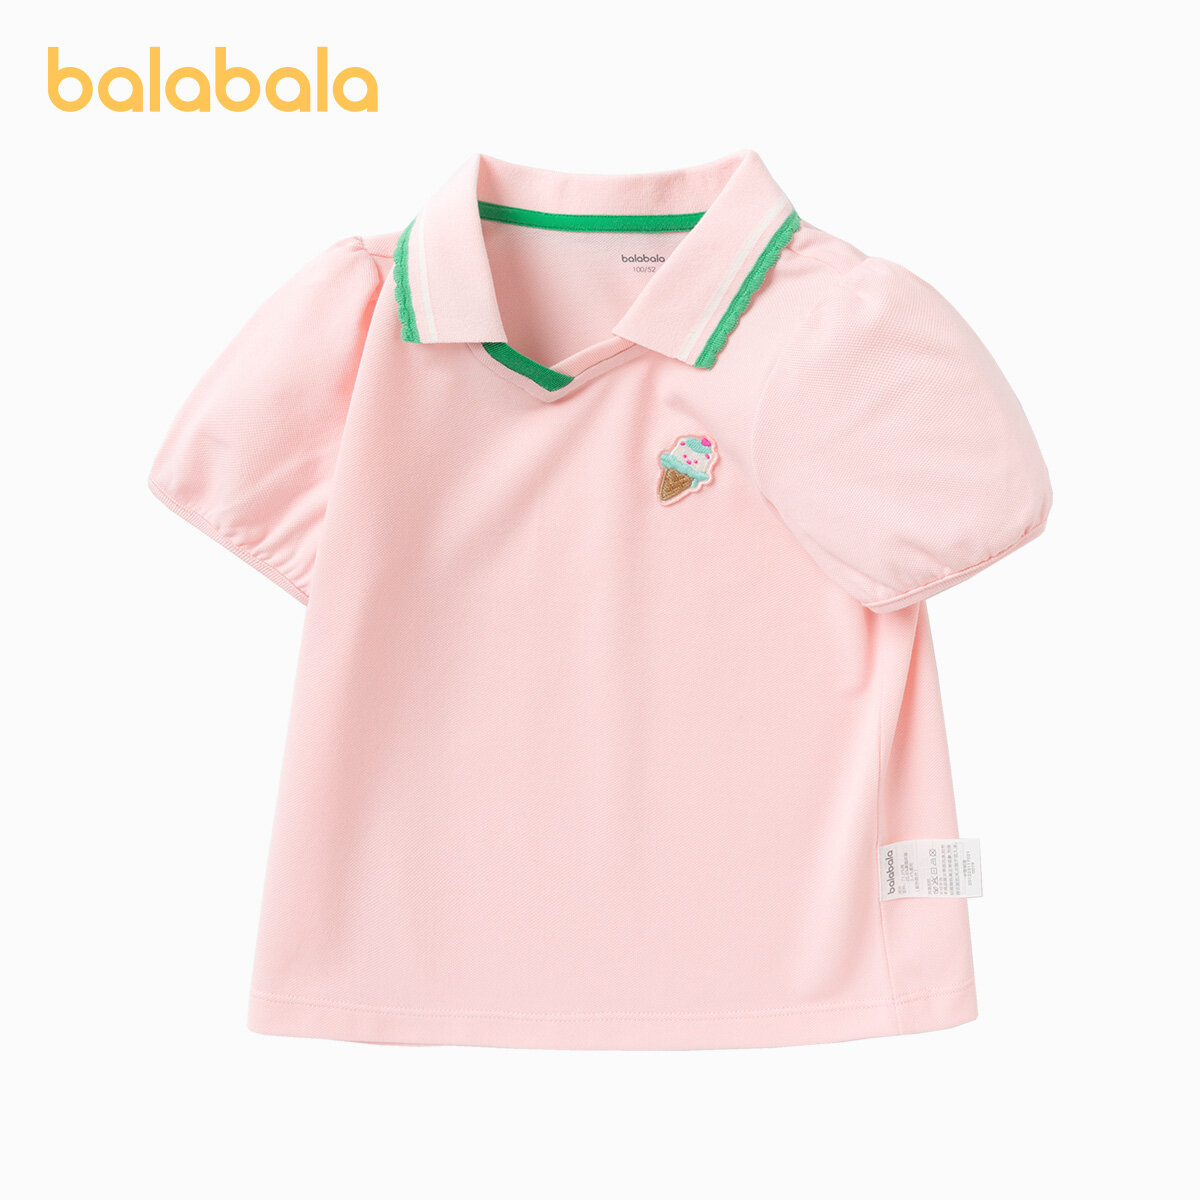 balabala 女幼童冰激淩女幼童T恤 2-8 歲